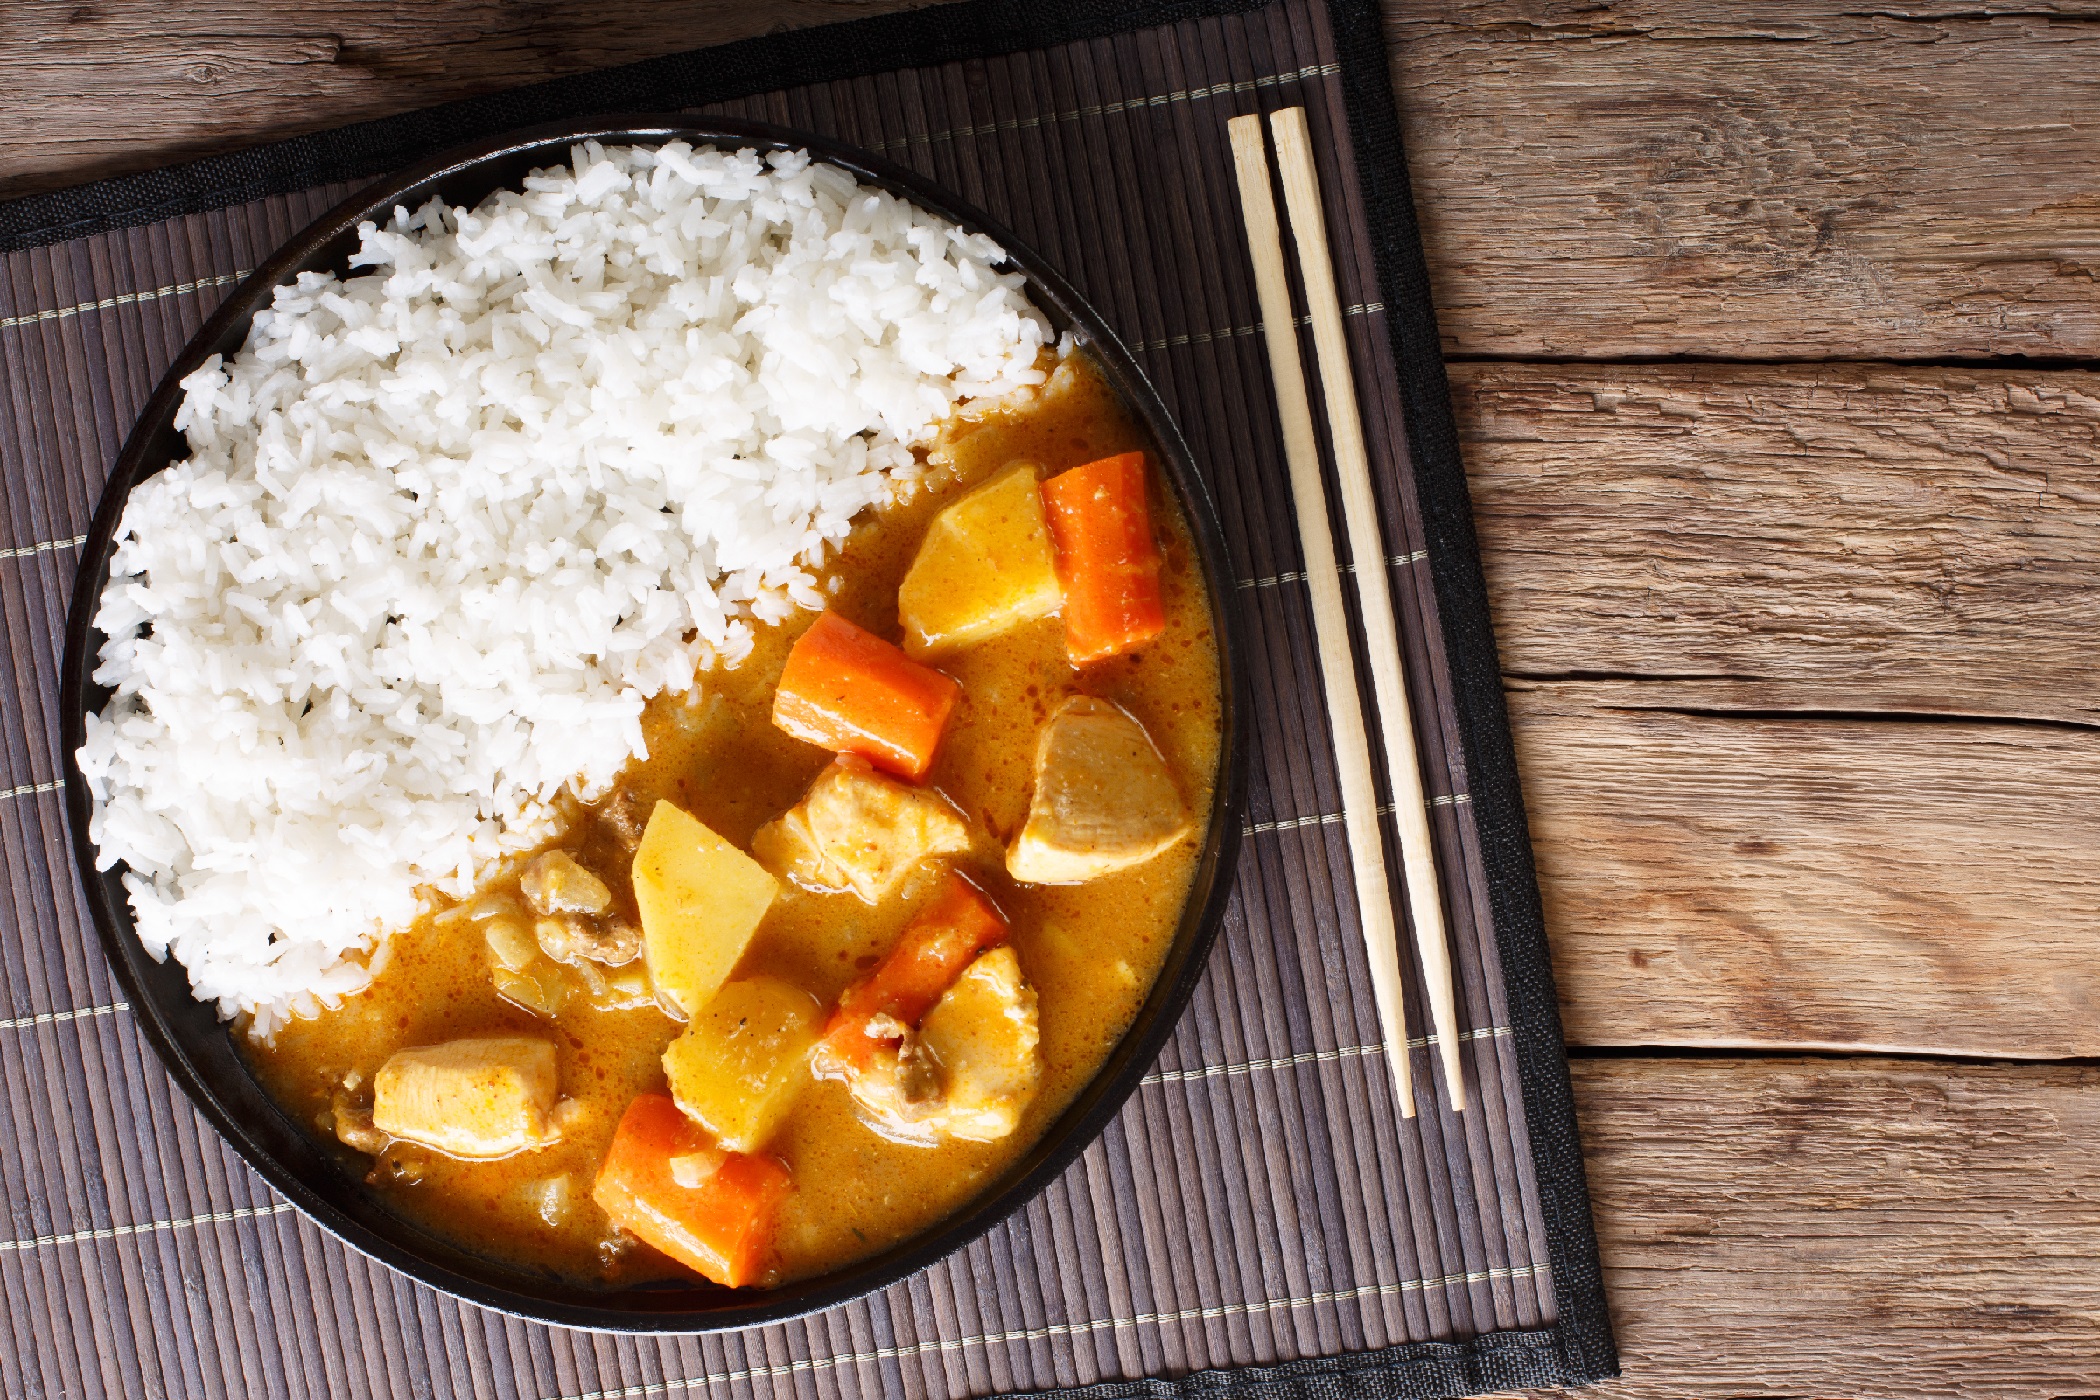 A világ kedvence 2022-ben a Kare volt 4,92 csillaggal: a japán stílusú curry kevésbé fűszeres, de édesebb és sötétebb, mint az indiai változat. Egykor csak a leggazdagabbak engedhették meg maguknak, mára azonban japán nemzeti étellé vált